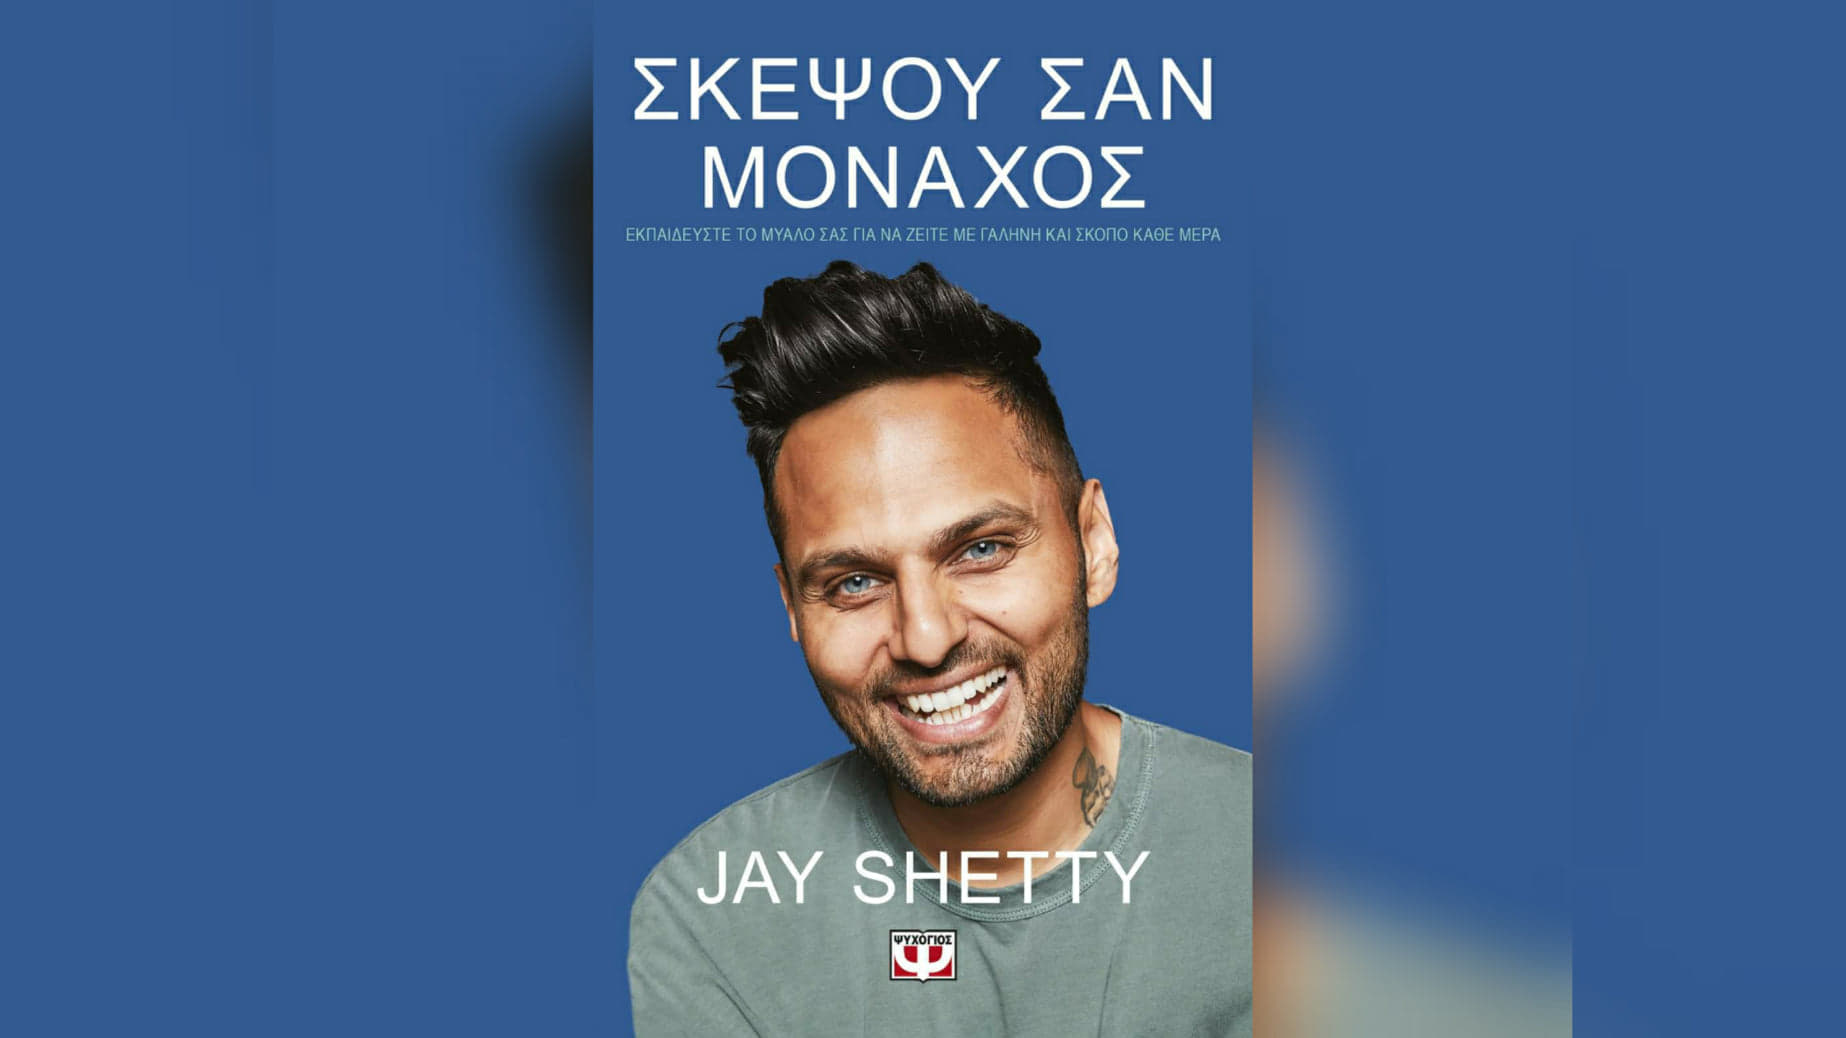 Σκέψου σαν μοναχός του Jay Shetty. Παρουσίαση του βιβλίου προσωπικής ανάπτυξης του Τζέι Σέτι, του σούπερ σταρ των social media.